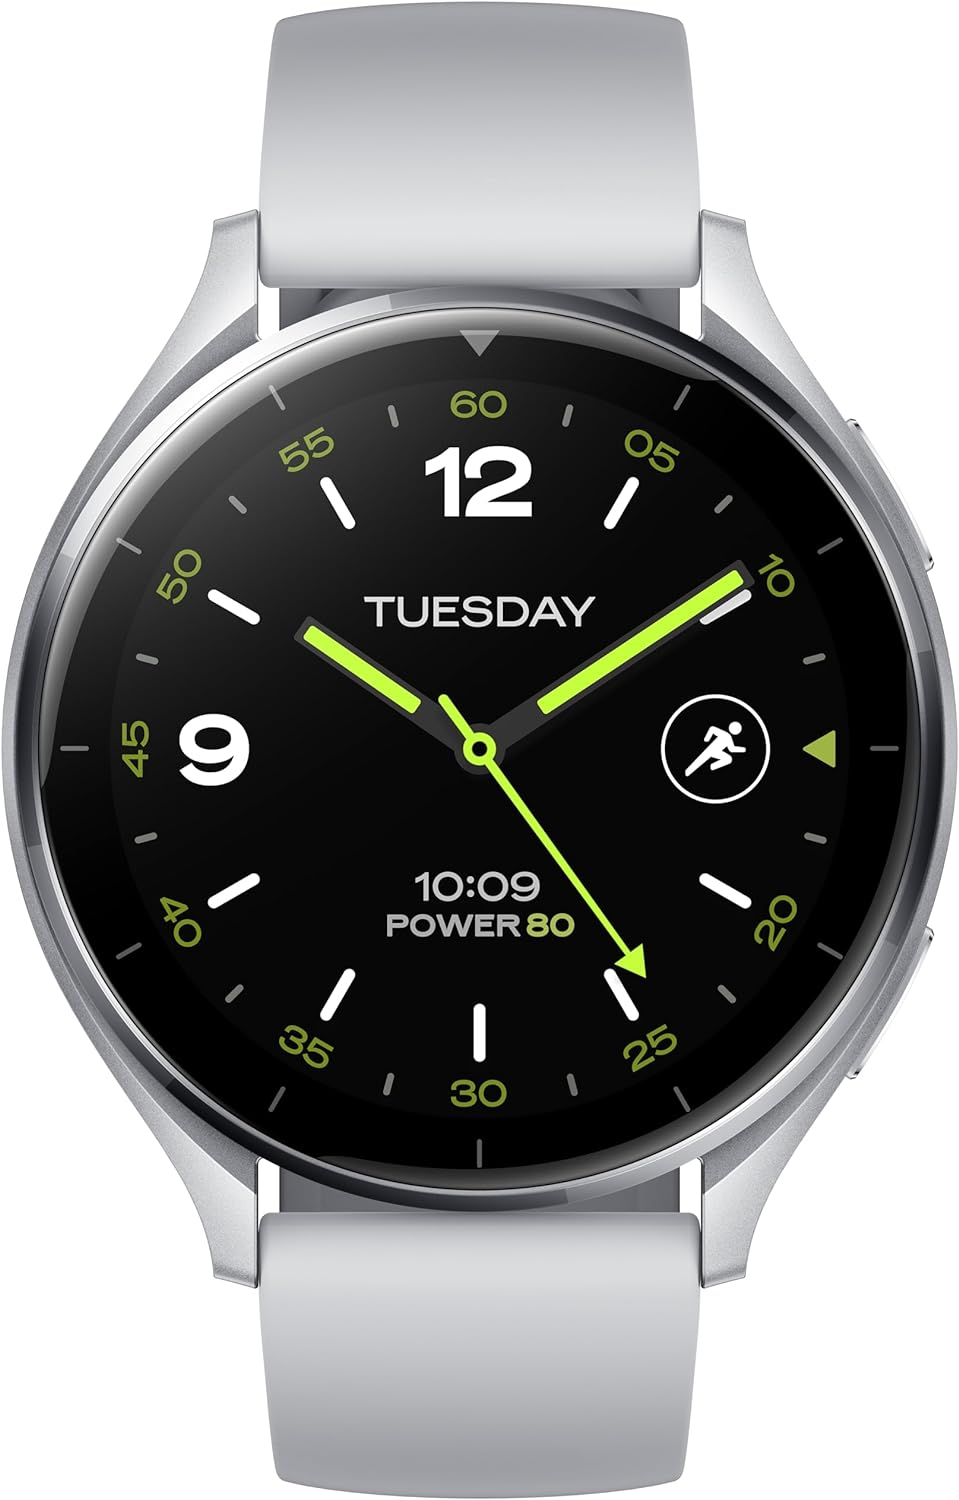 Xiaomi Watch 2 (Schwarz/Silber)  auf Amazon